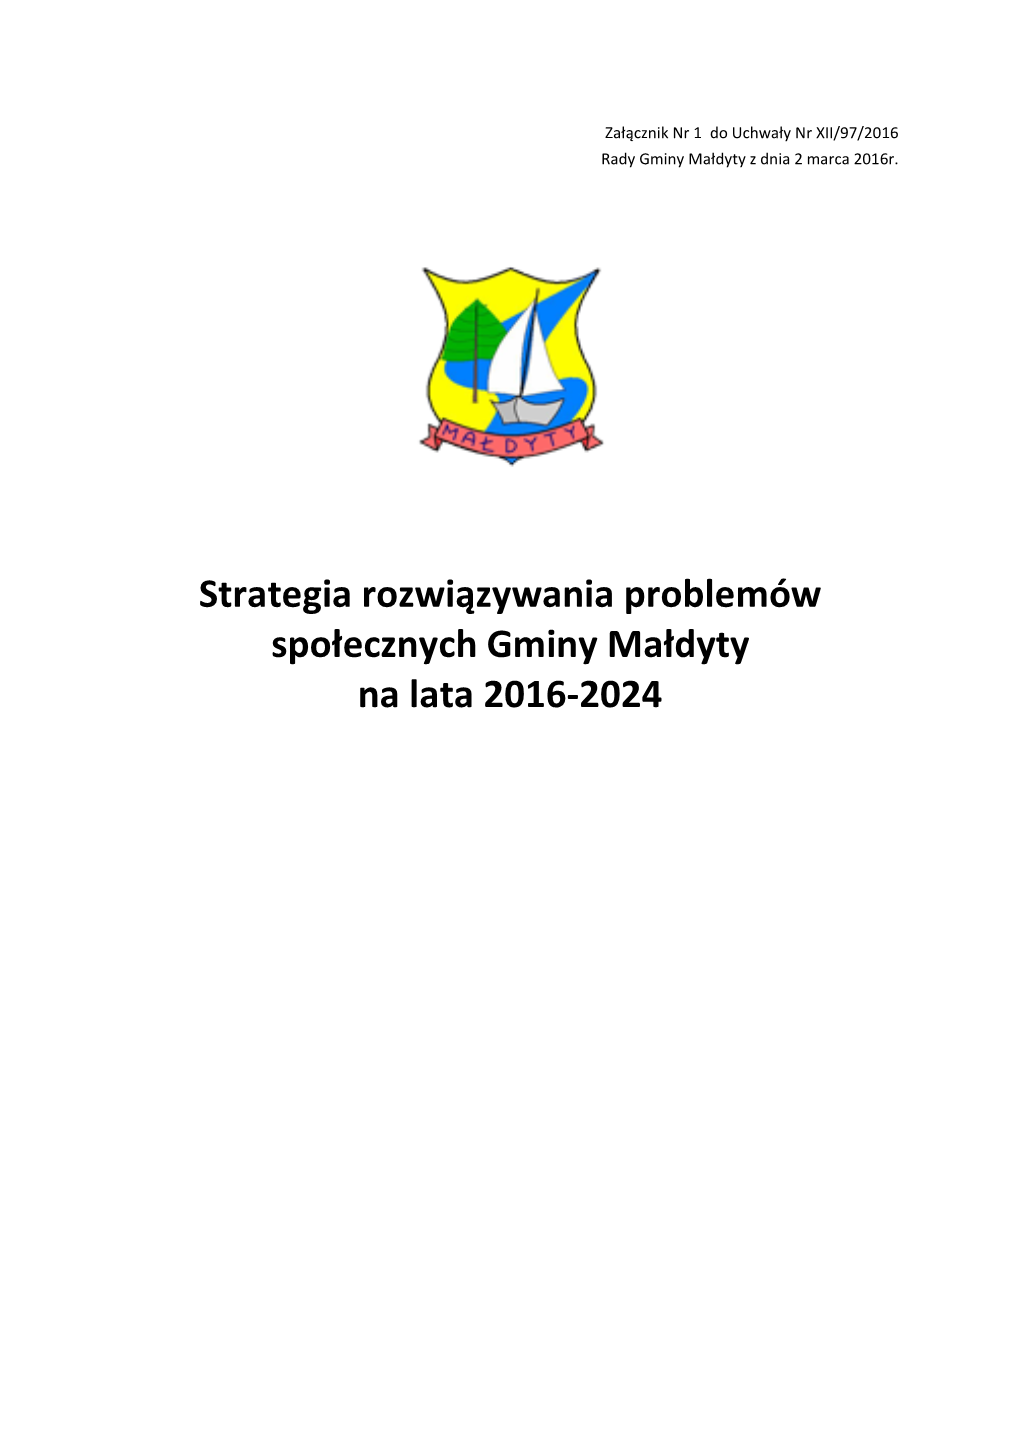 Strategia Rozwiązywania Problemów Społecznych Gminy Małdyty Na Lata 2016-2024